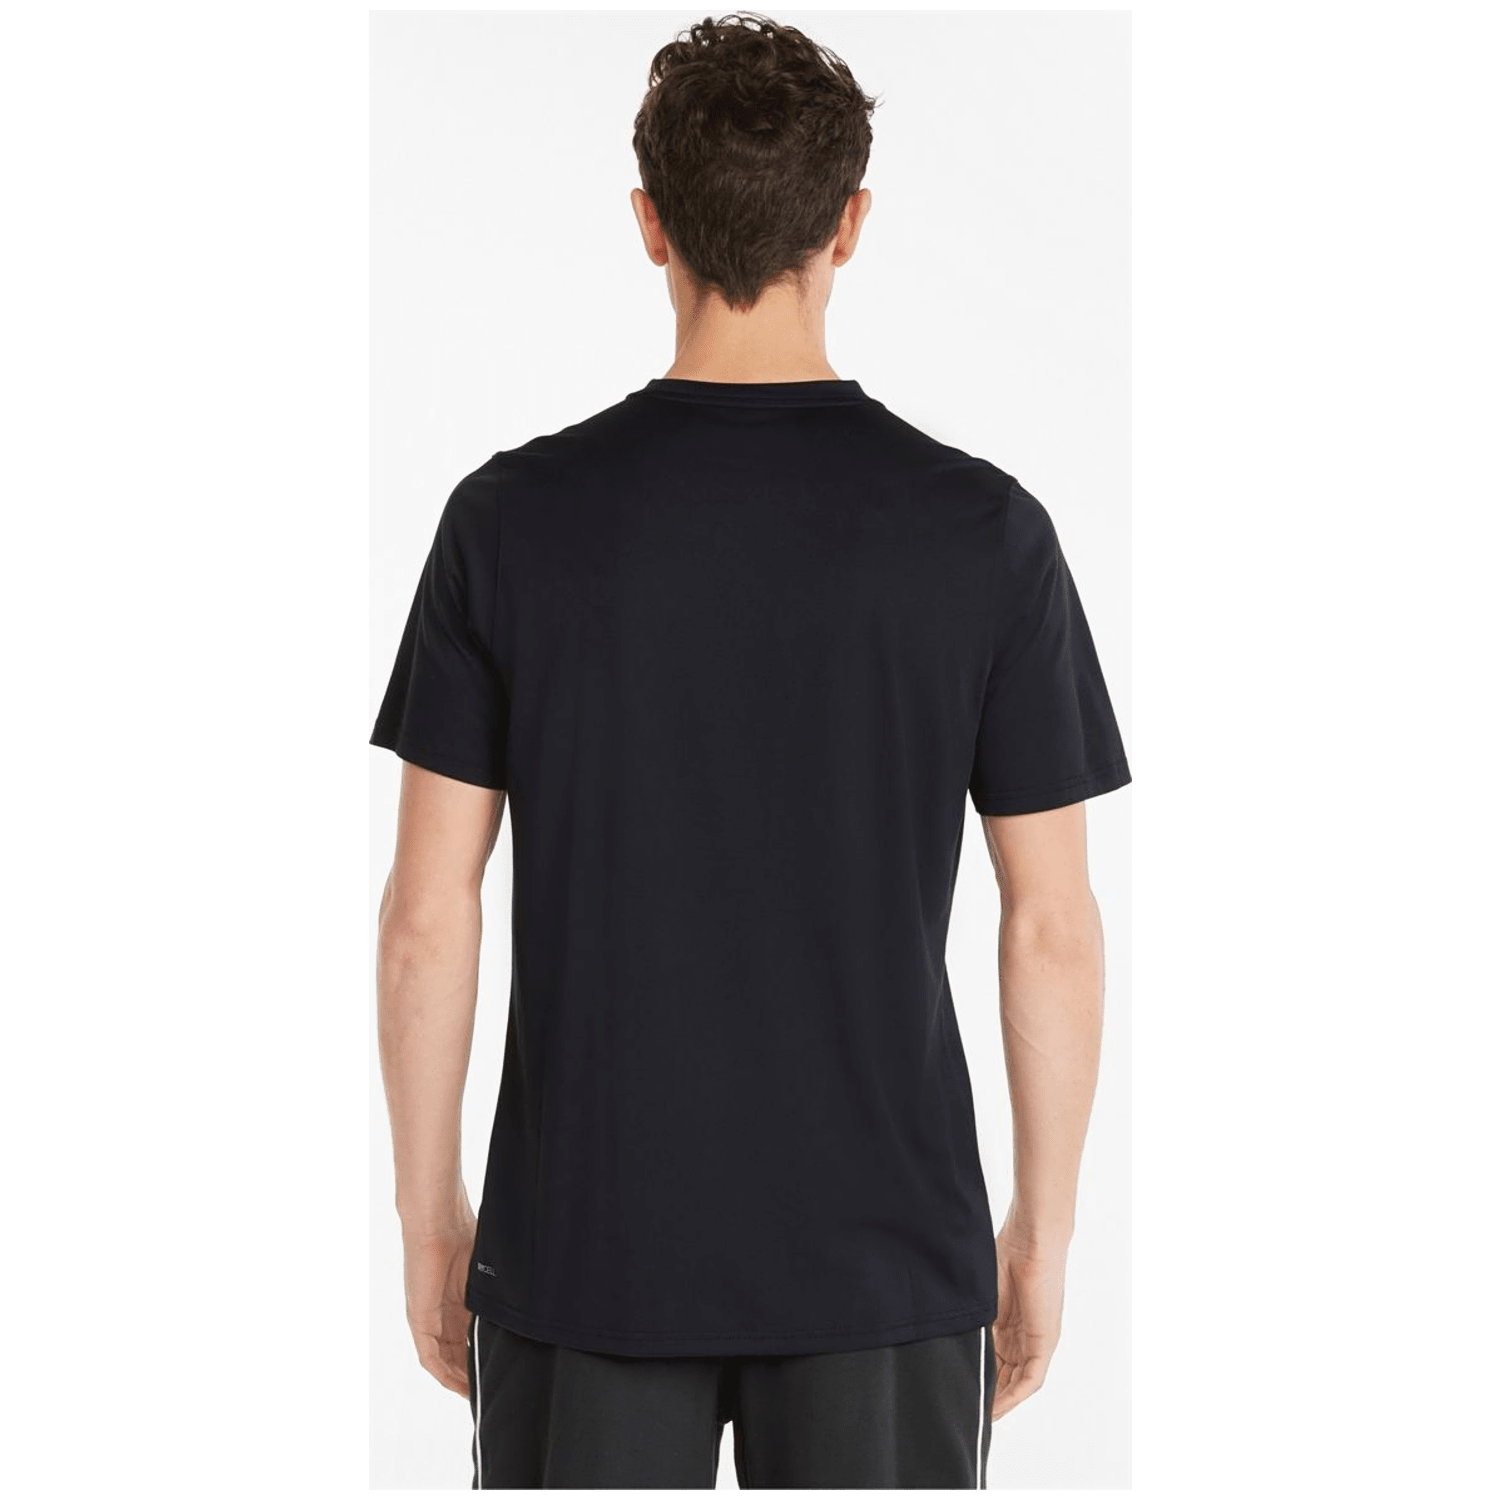 Puma Train Graphic TEE Herren T-Shirt